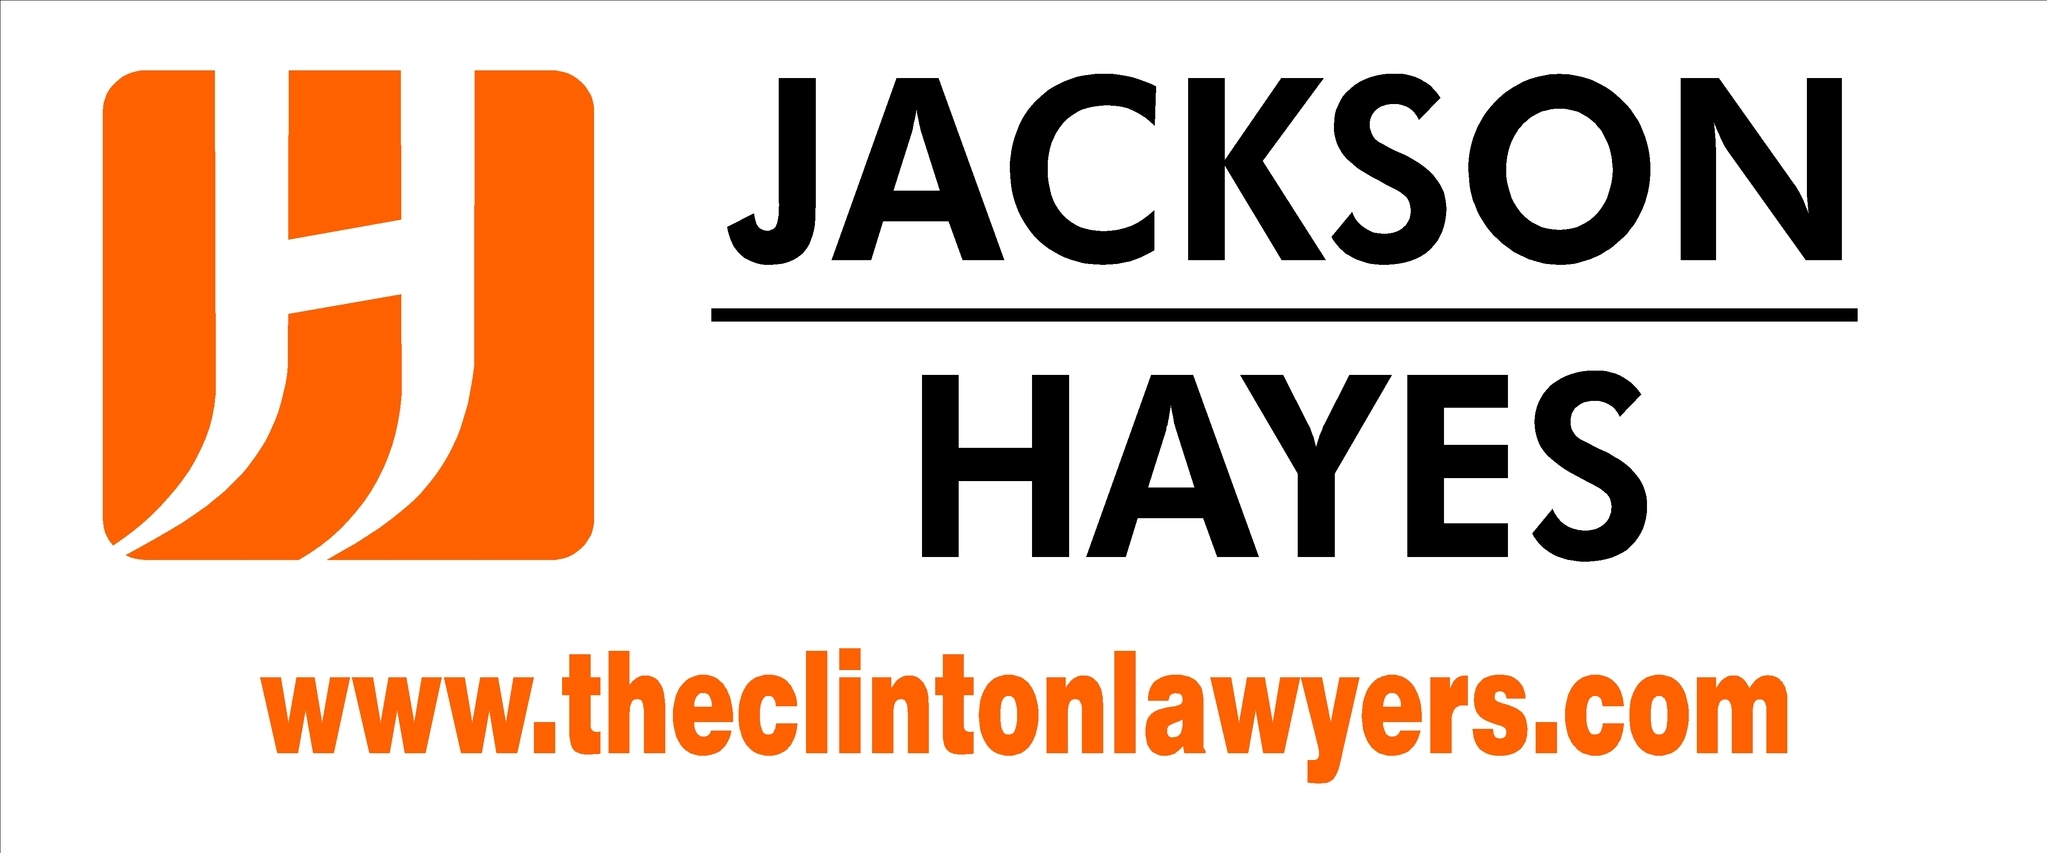 Jackson Hayes